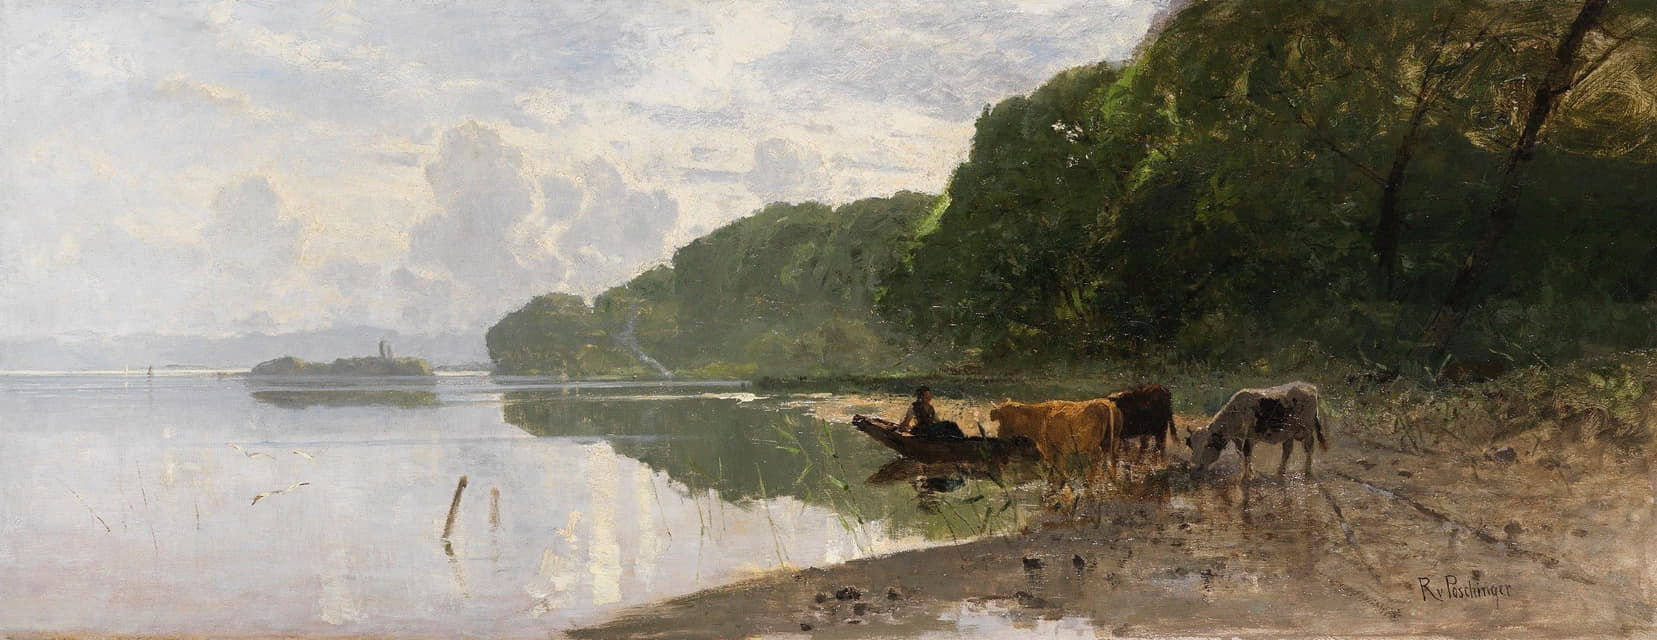 斯塔恩堡湖上放牧奶牛的海岸景观